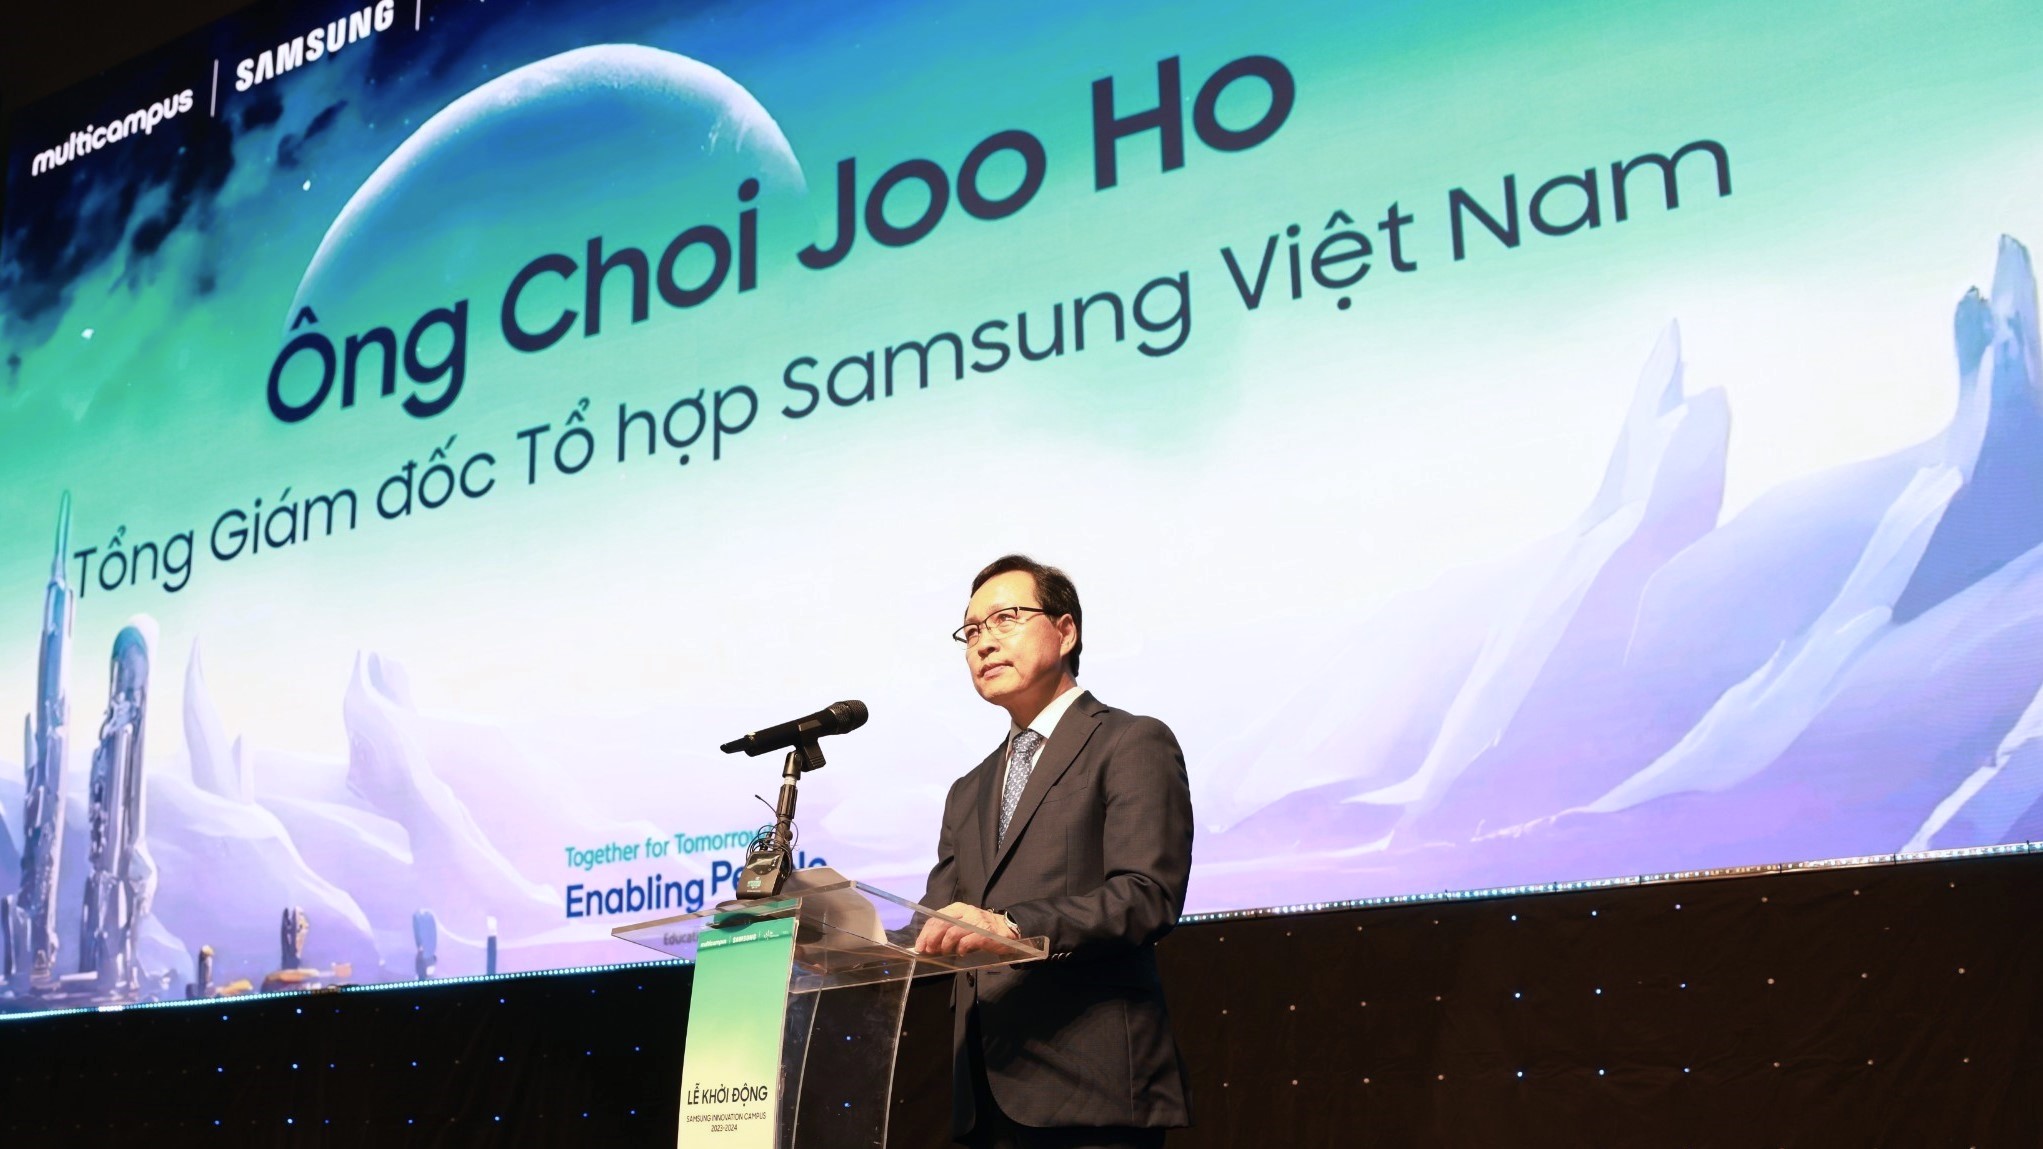 Samsung Innovation Campus 2023-2024 sẽ đào tạo 6.000 nhân tài công nghệ mới - Hinh 3 Tong Giam doc Choi Joo Ho phat bieu khang dinh muc tieu tai su kien 1